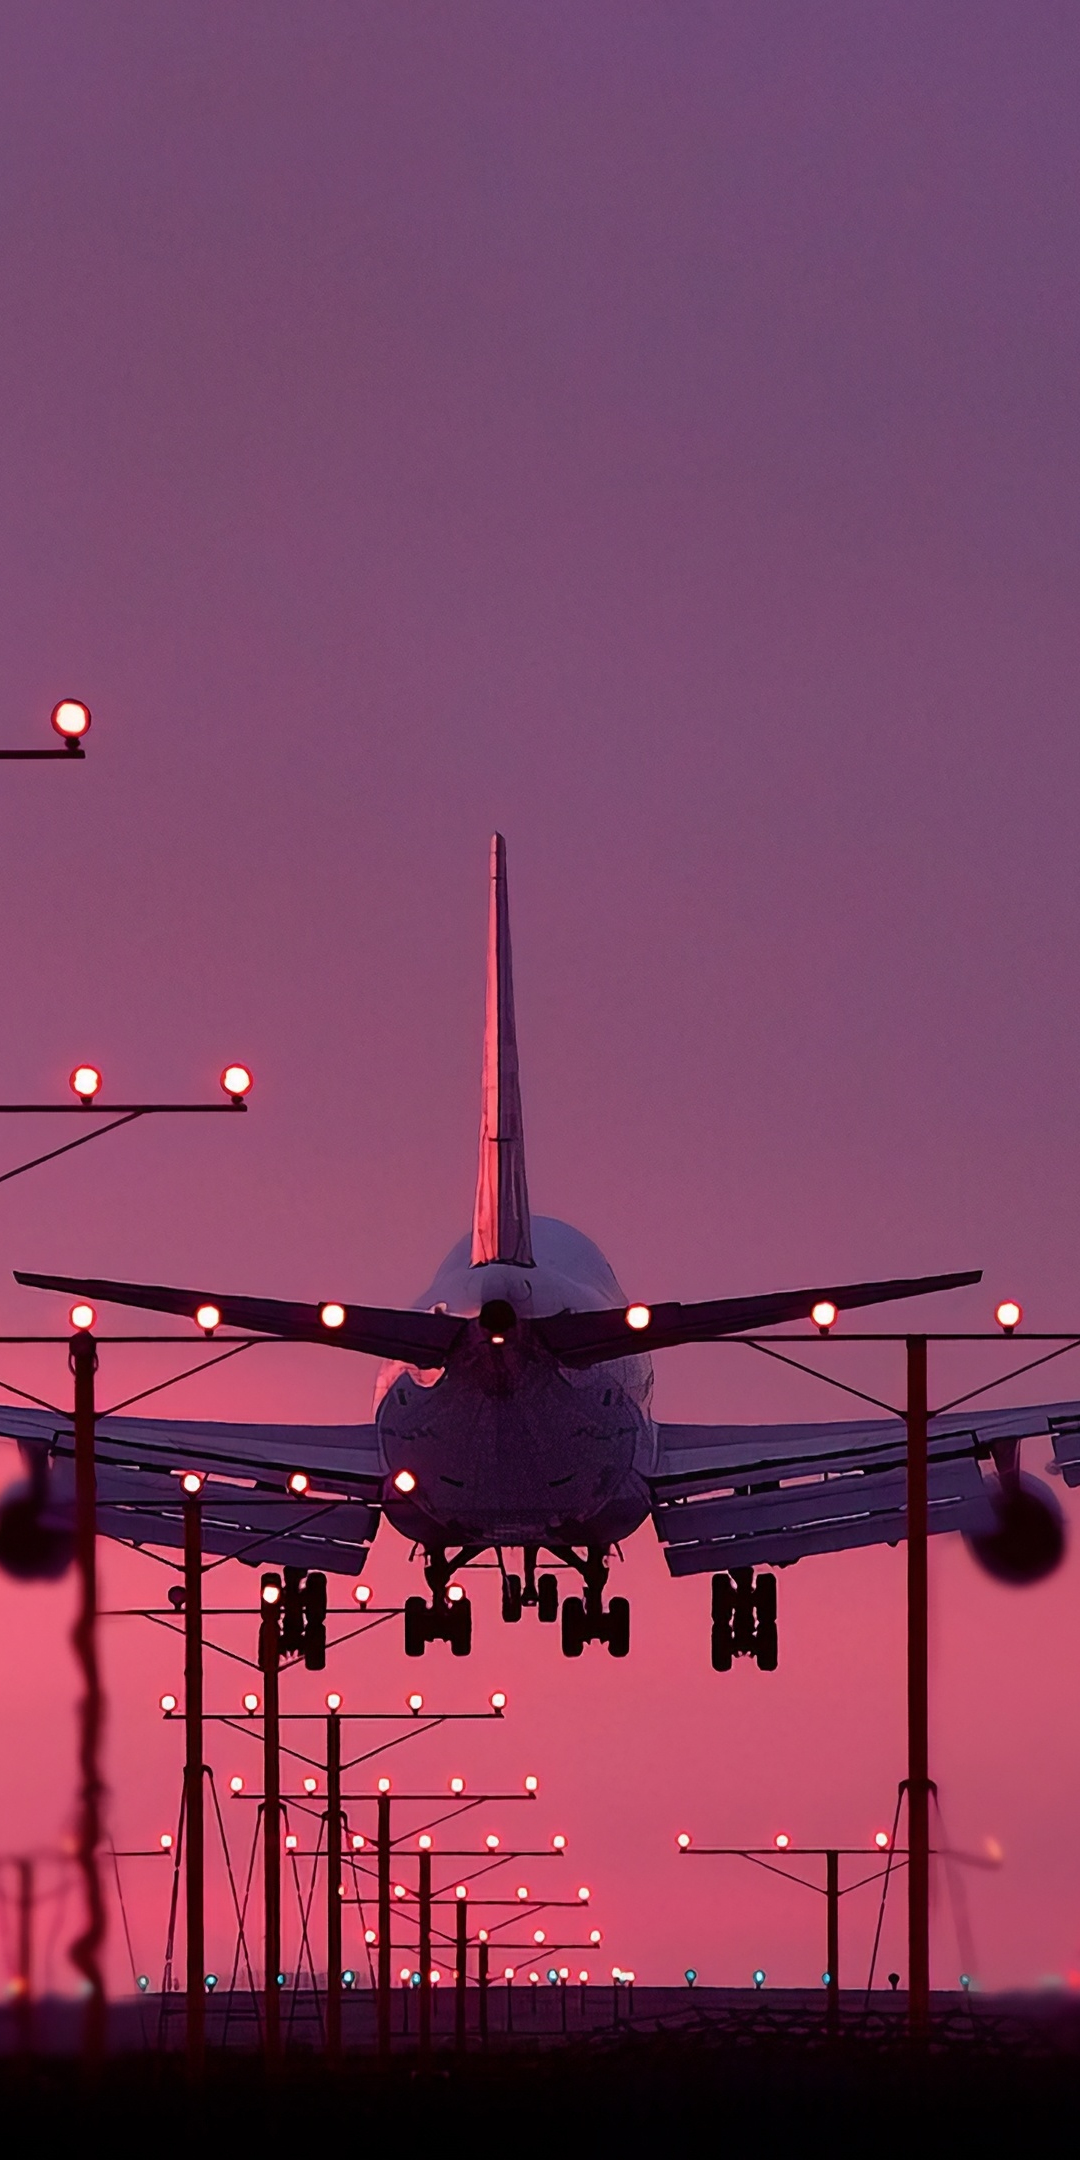 Aircraft, landing, sunset, 1080x2160 wallpaper